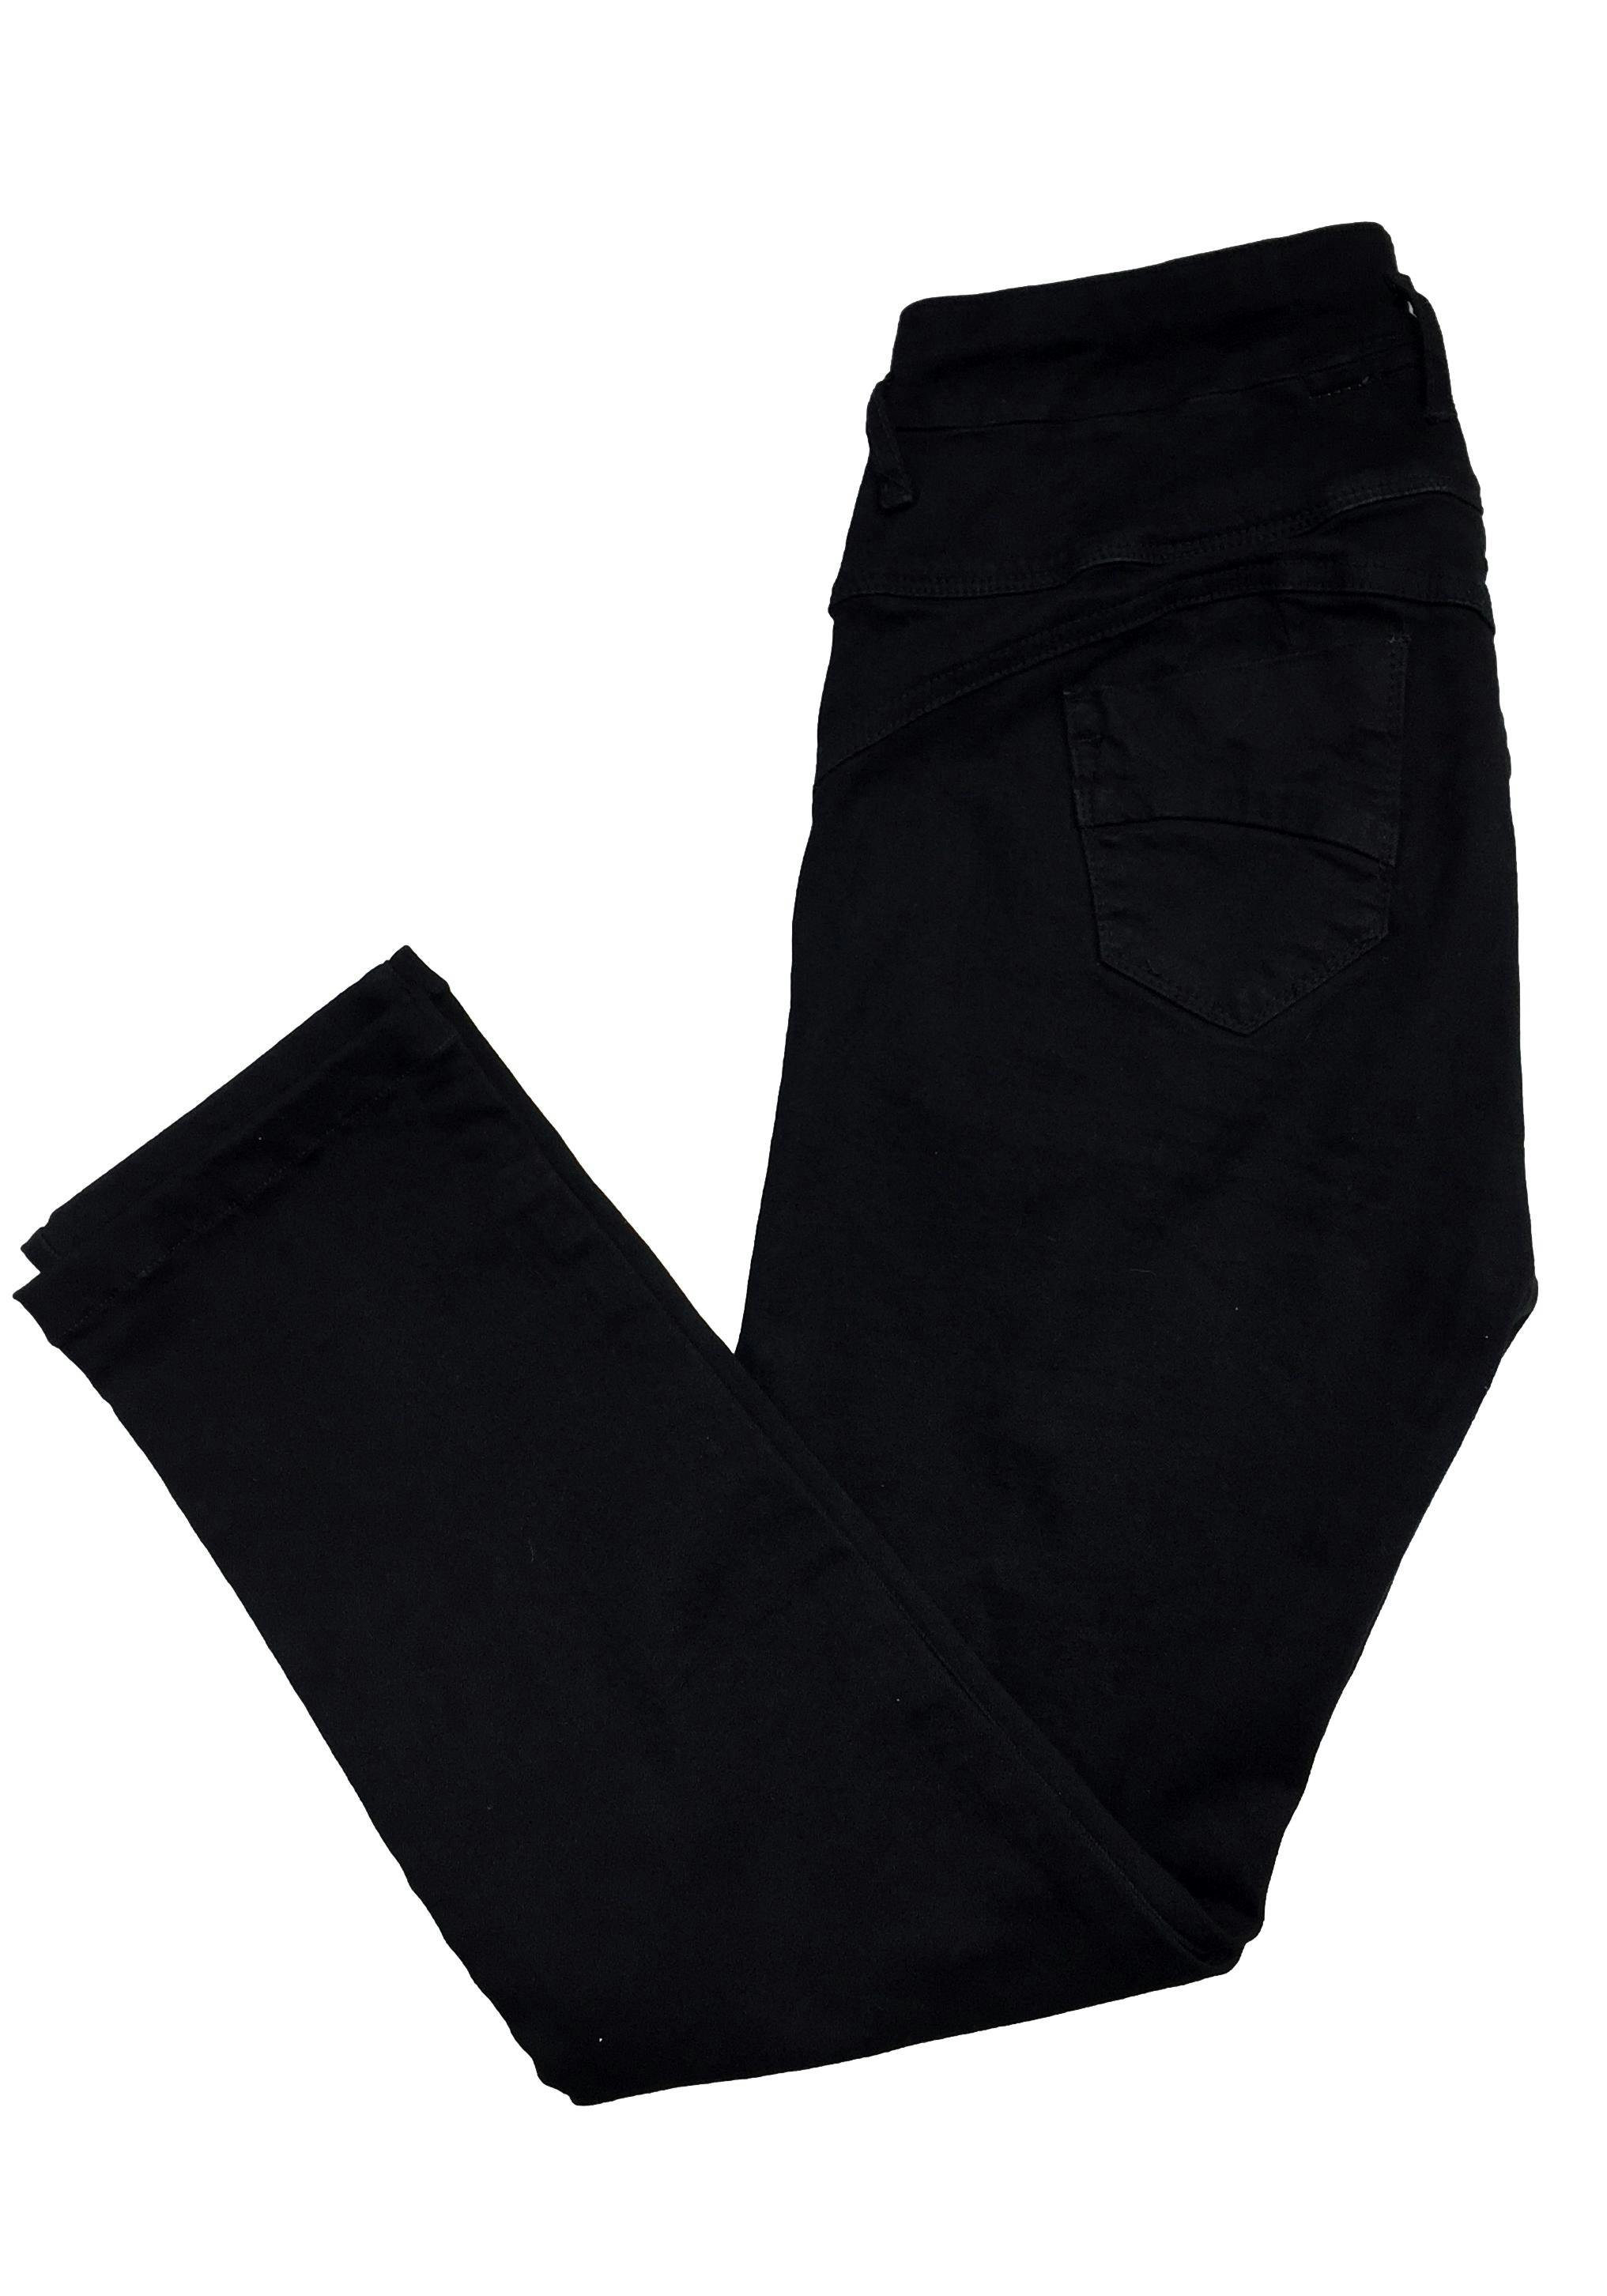 Jean negro con pretina alta, botones delanteros, four pockets. Cintura 76 cm, Cintura 27 cm, Largo 91 cm.